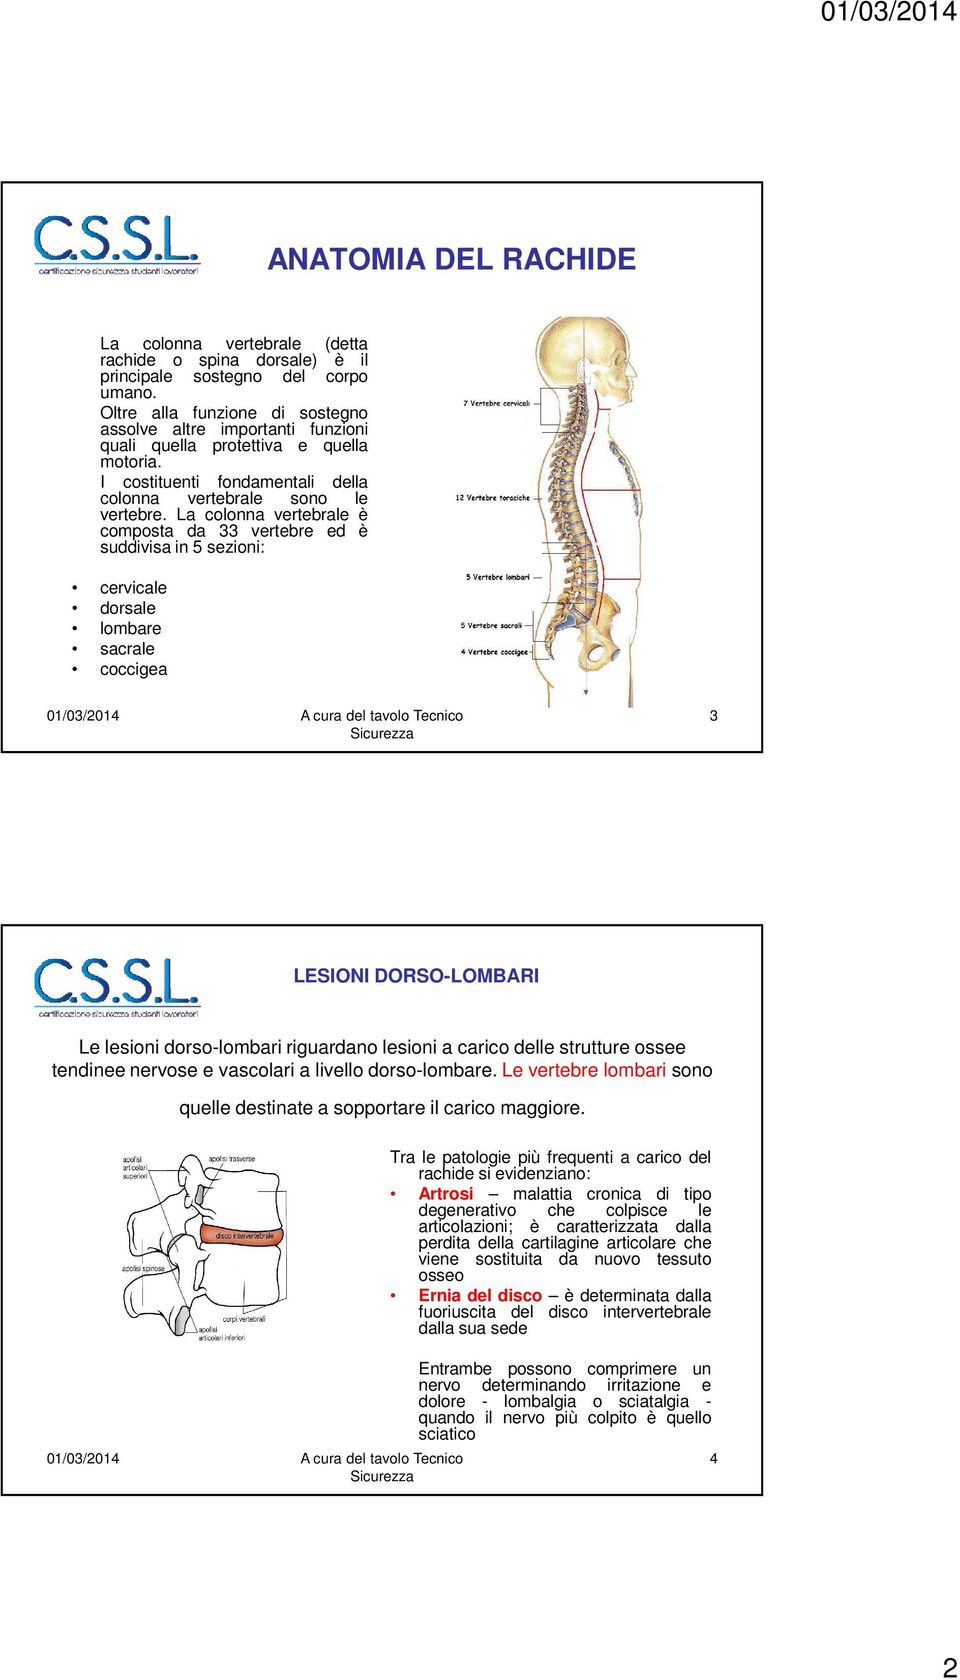 La colonna vertebrale è composta da 33 vertebre ed è suddivisa in 5 sezioni: cervicale dorsale lombare sacrale coccigea 3 LESIONI DORSO-LOMBARI Le lesioni dorso-lombari riguardano lesioni a carico